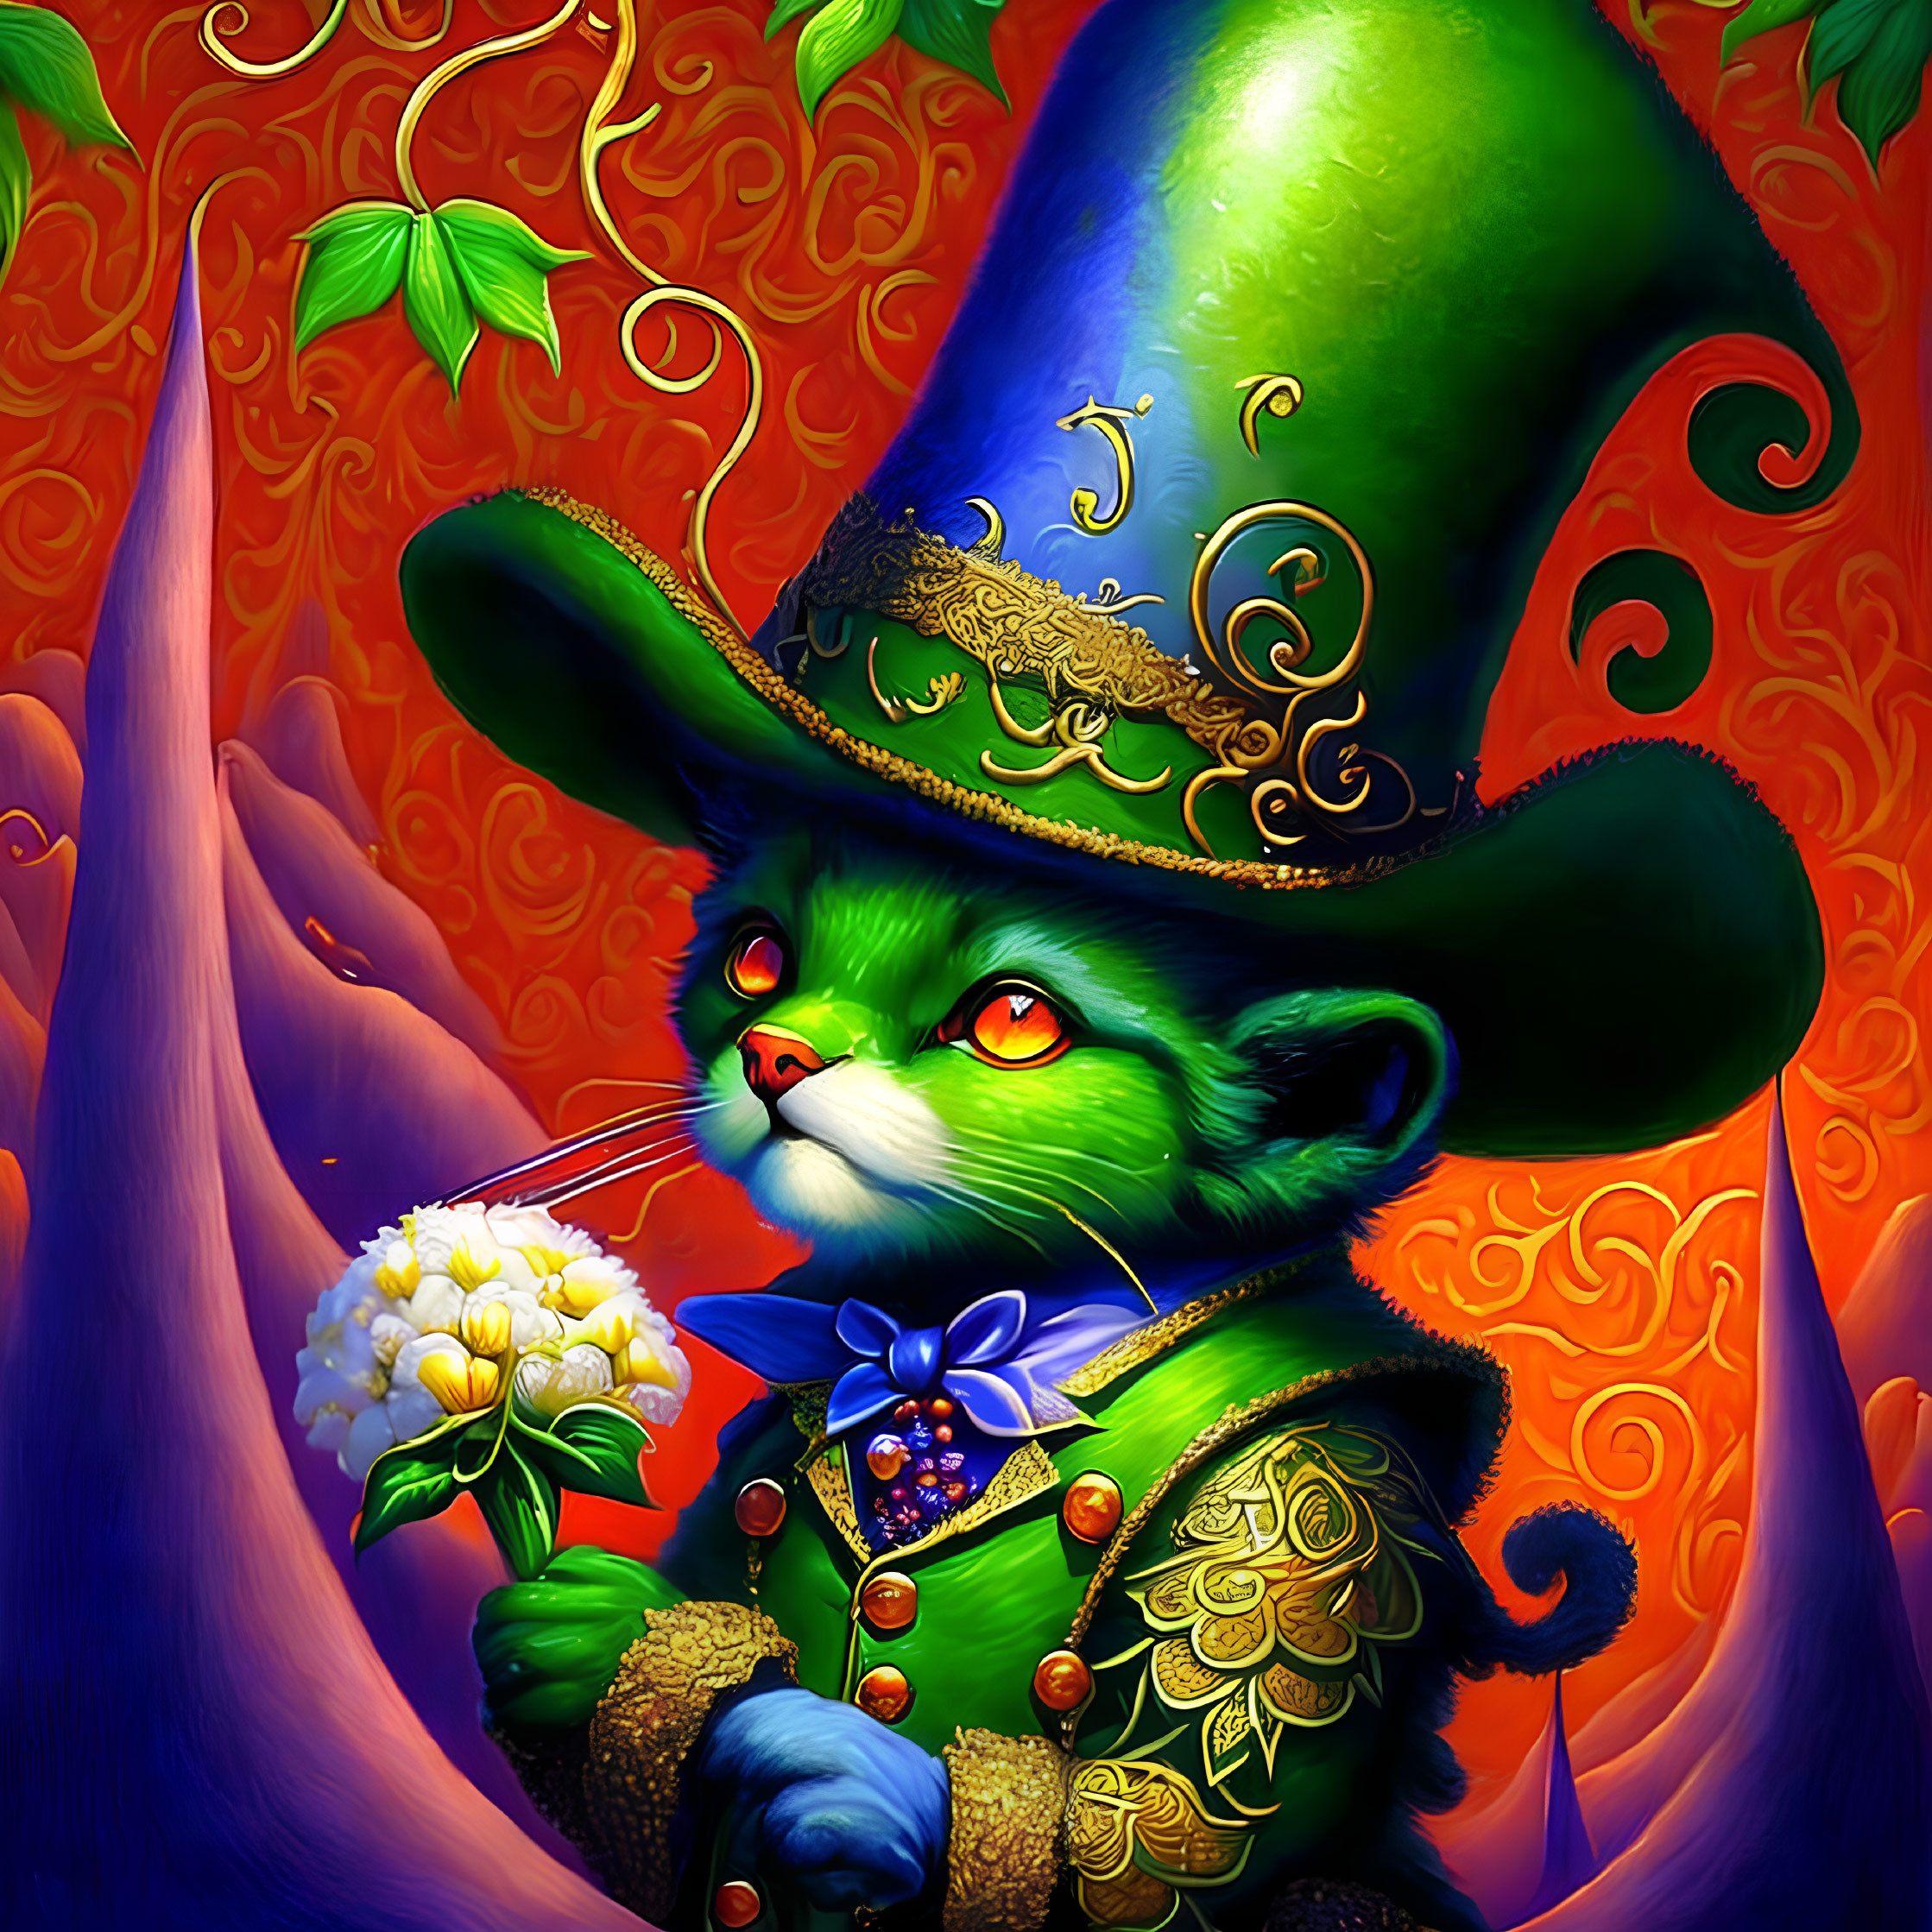 Anthropomorphic Green Cat in Elegant Attire on Fiery Orange Background